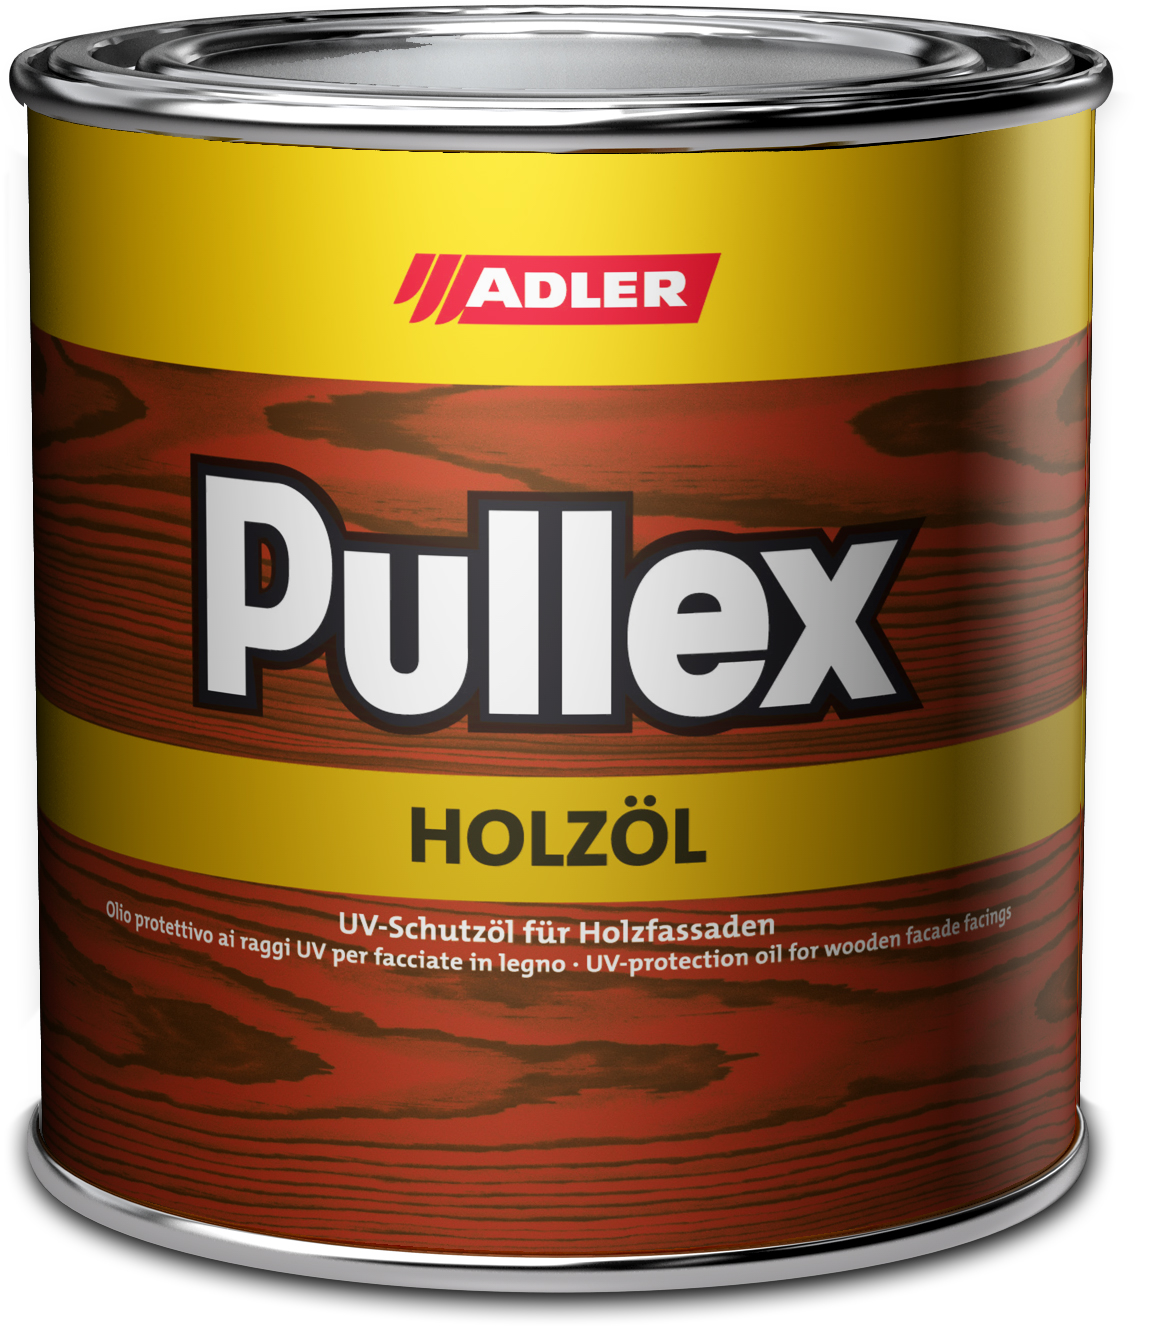 Adler Pullex Holzöl Lärche,2.5L